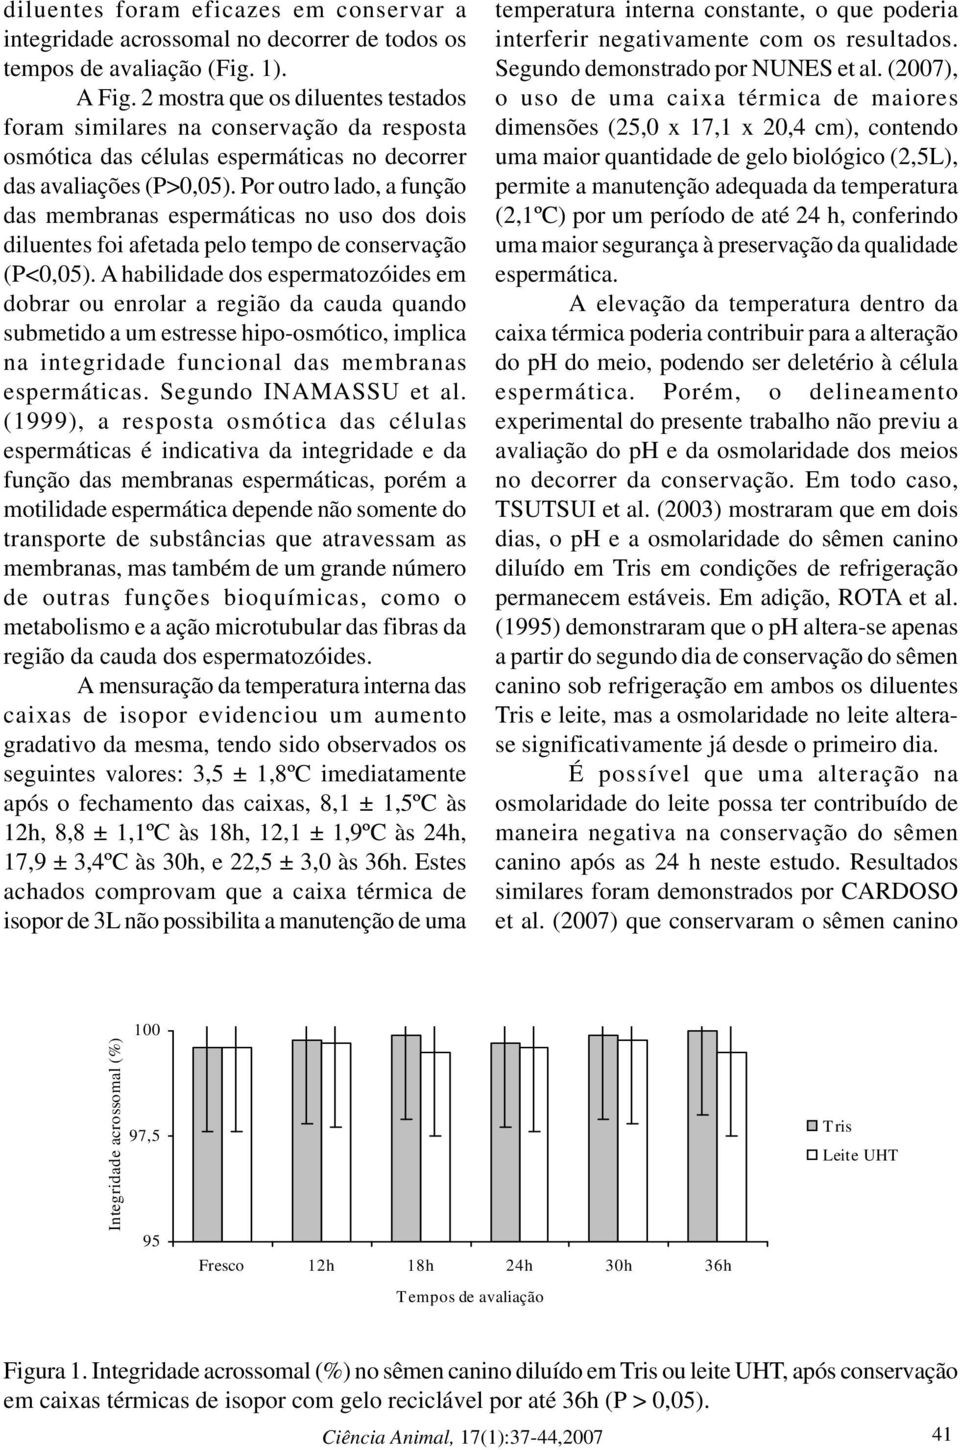 Por outro lado, a função das membranas espermáticas no uso dos dois diluentes foi afetada pelo tempo de conservação (P<0,05).